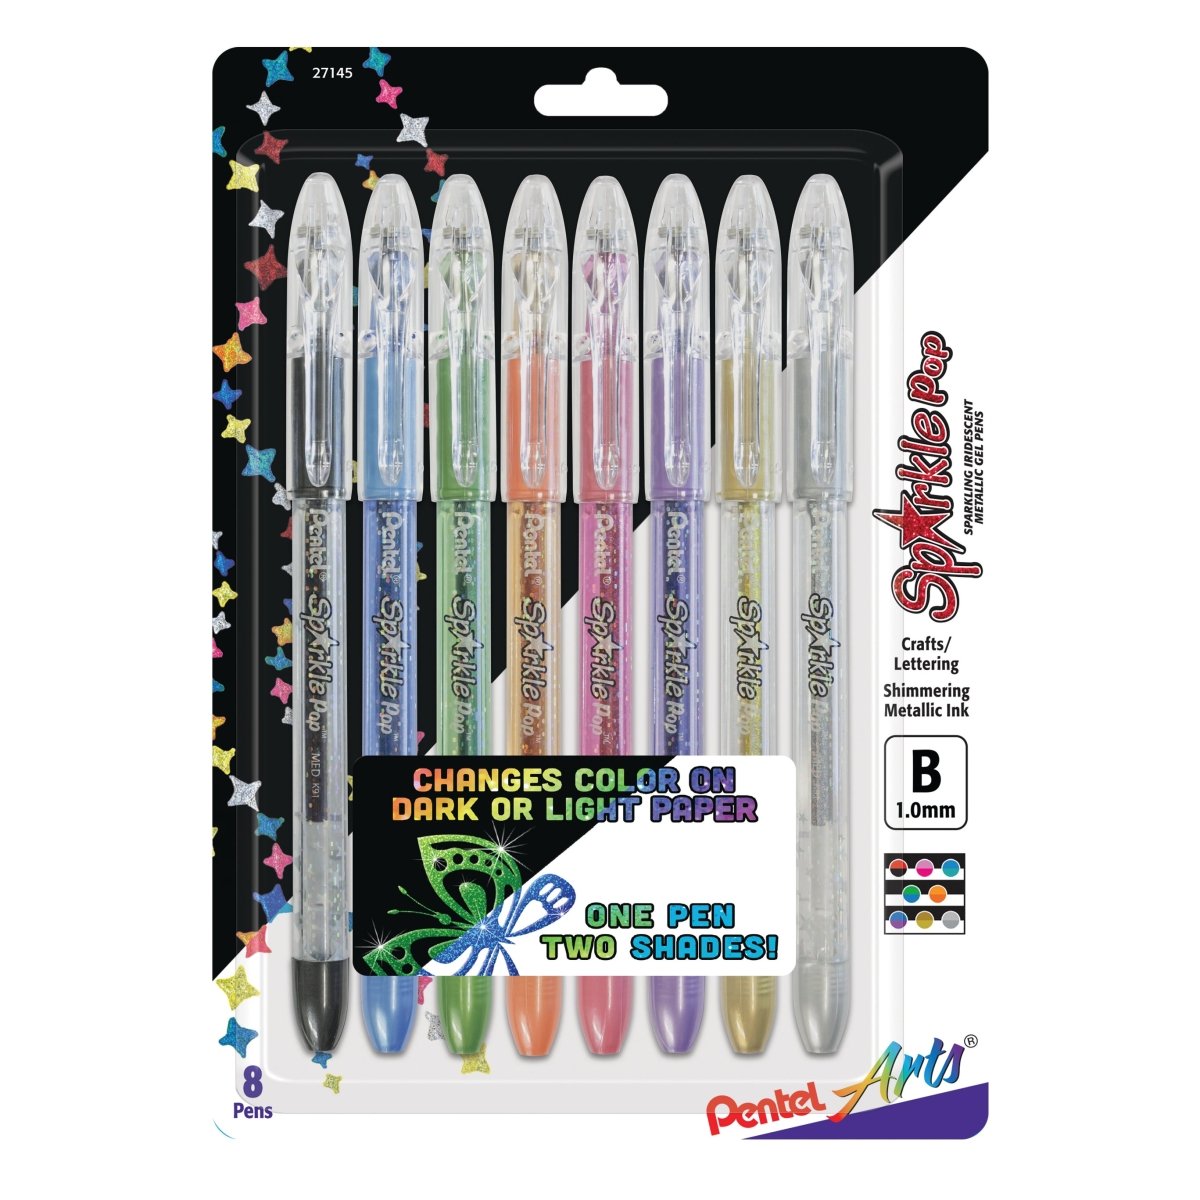 Pentel Arts Sparkle Pop Metallic Gel Ink Pen, (1.0mm) Bold Line, Assorted Ink (A/C/D/F/P/V/X/Z) - 8-pk - merriartist.com